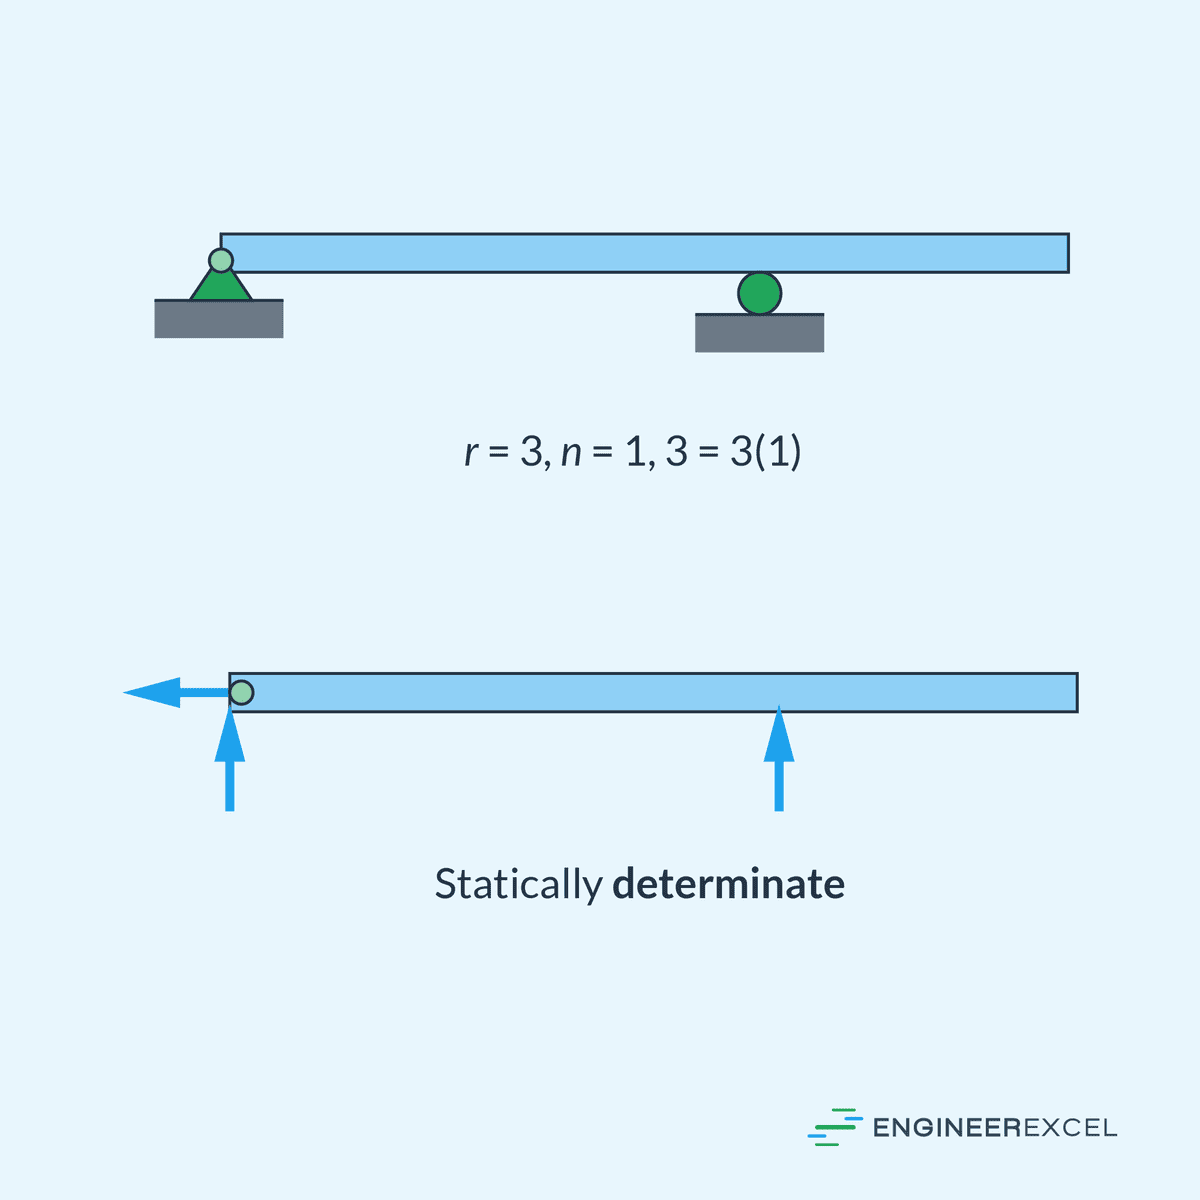 A statically determinate beam